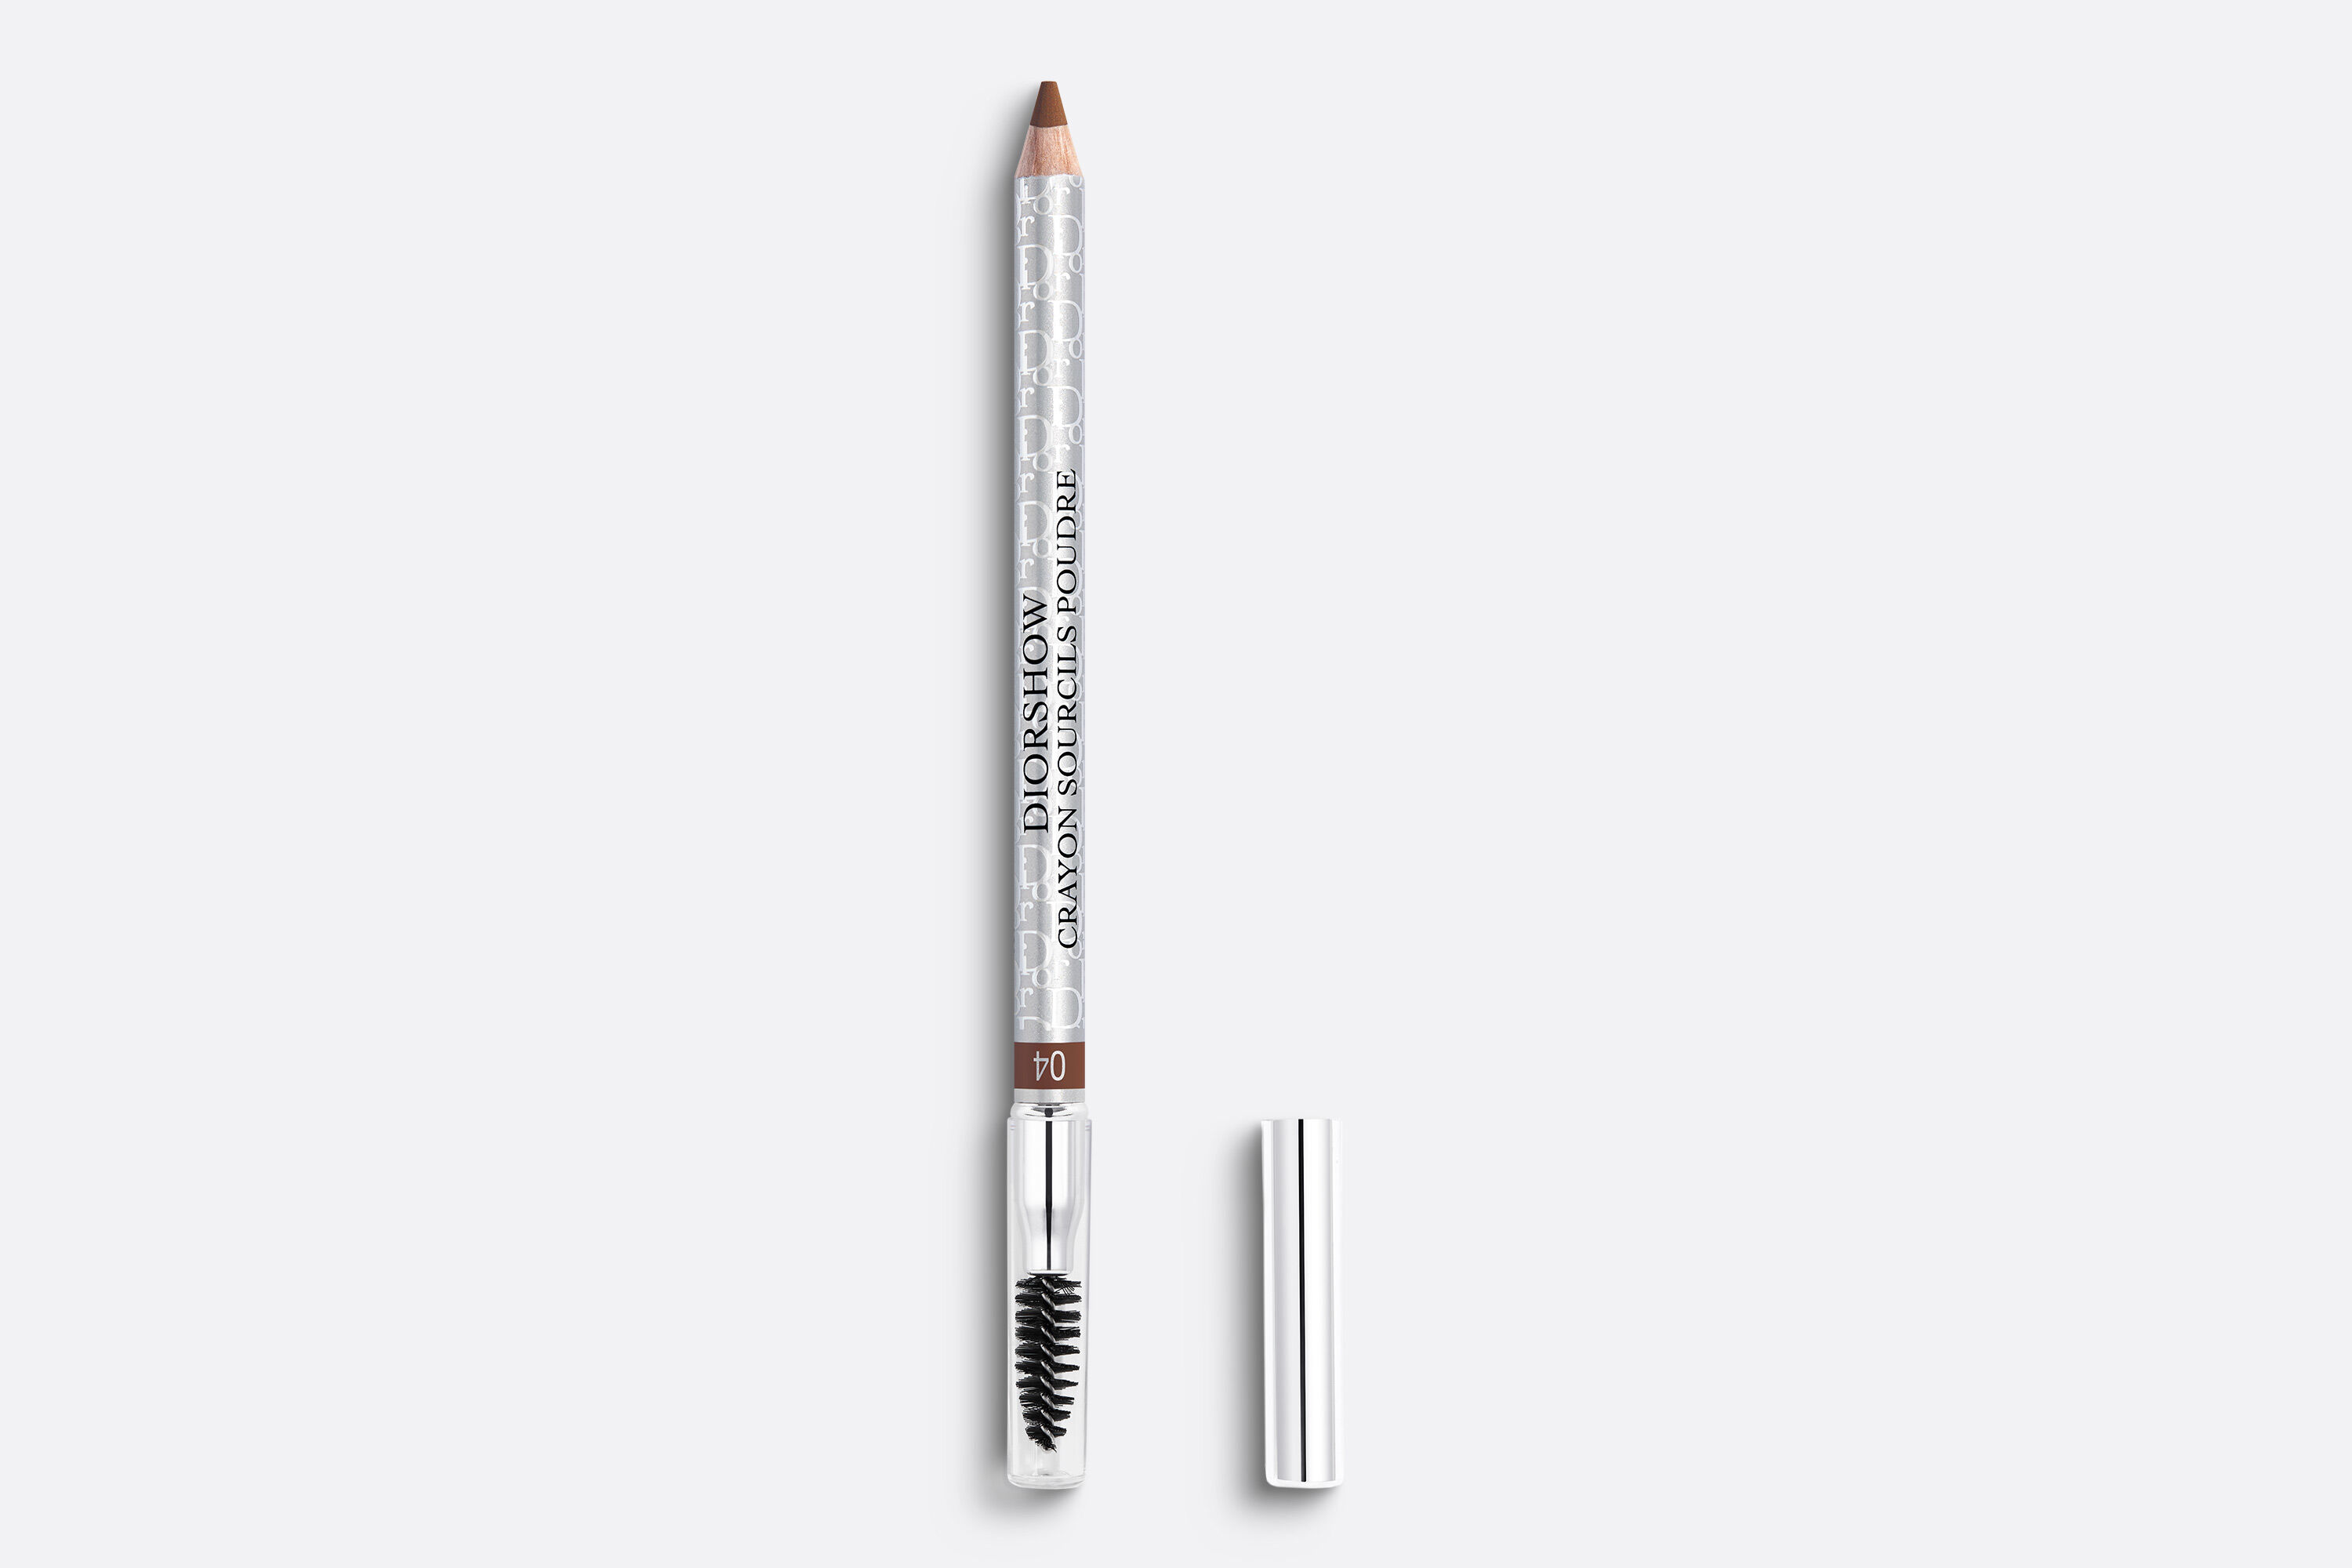 CHANEL Crayon Sourcils Sculpting Eyebrow Pencil - Reviews